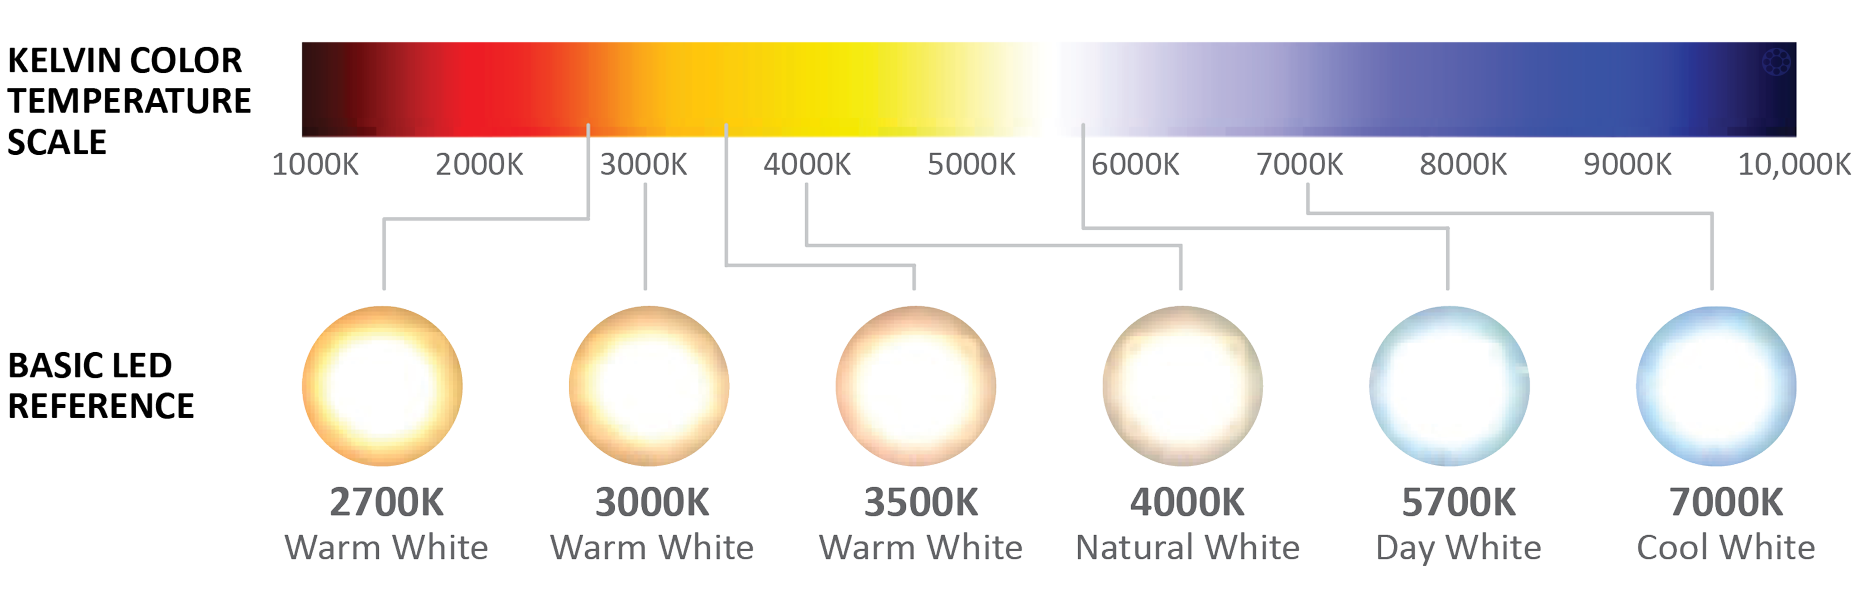 Теплый сколько кельвинов. Светодиодные лампы градация цветности. Температура светодиодных ламп таблица. Температура света в Кельвинах таблица. Таблица света в Кельвинах светодиодных ламп.